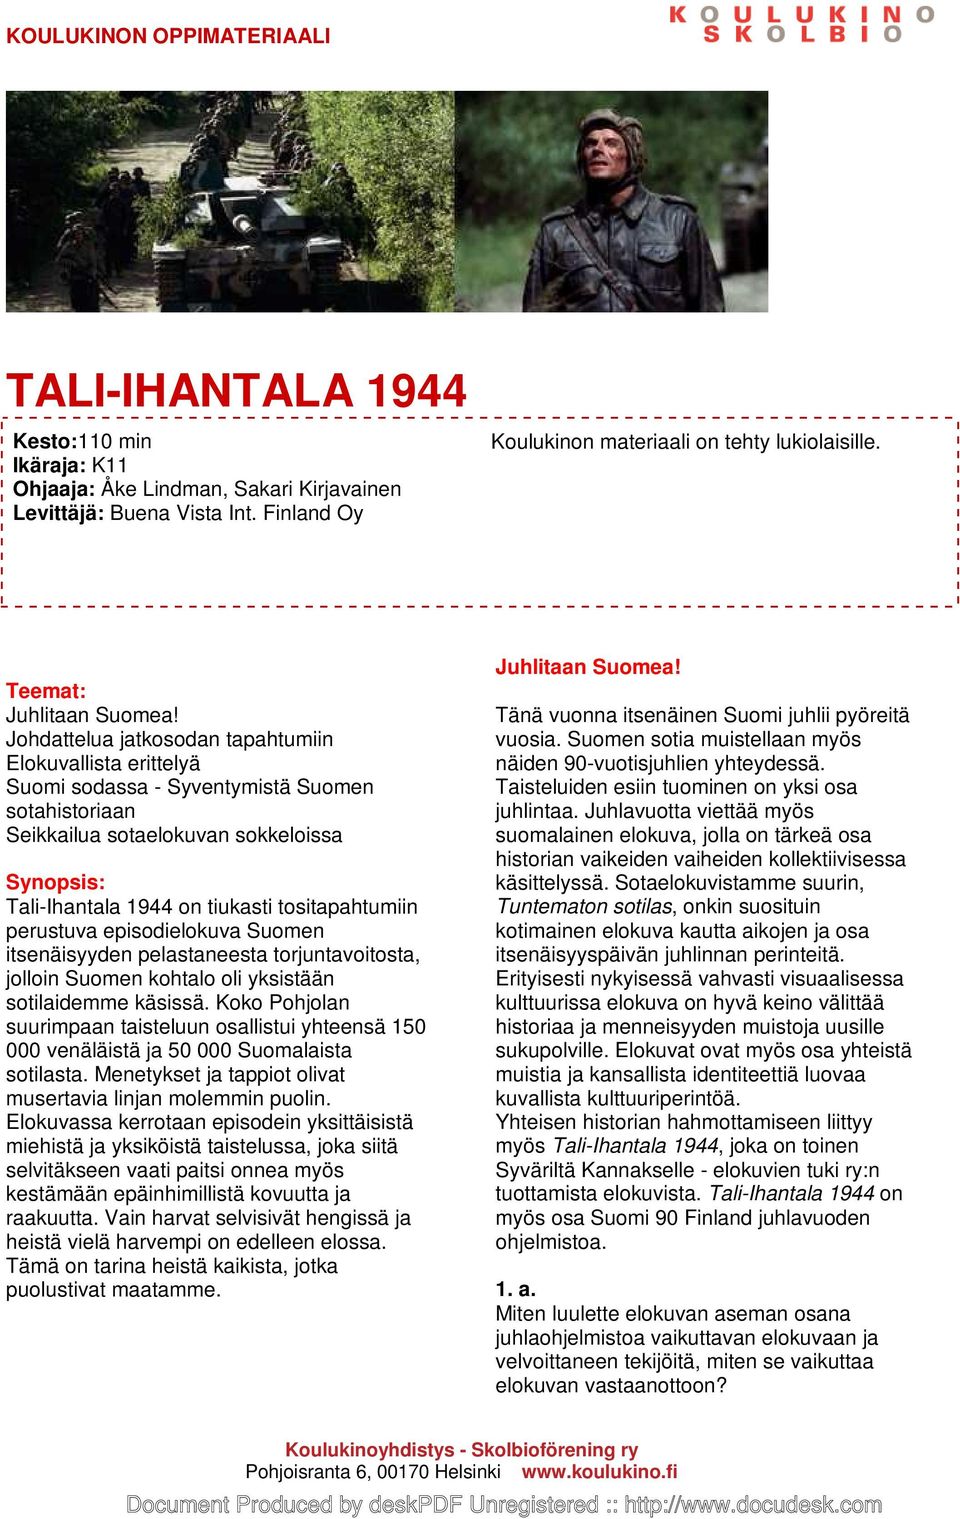 tositapahtumiin perustuva episodielokuva Suomen itsenäisyyden pelastaneesta torjuntavoitosta, jolloin Suomen kohtalo oli yksistään sotilaidemme käsissä.